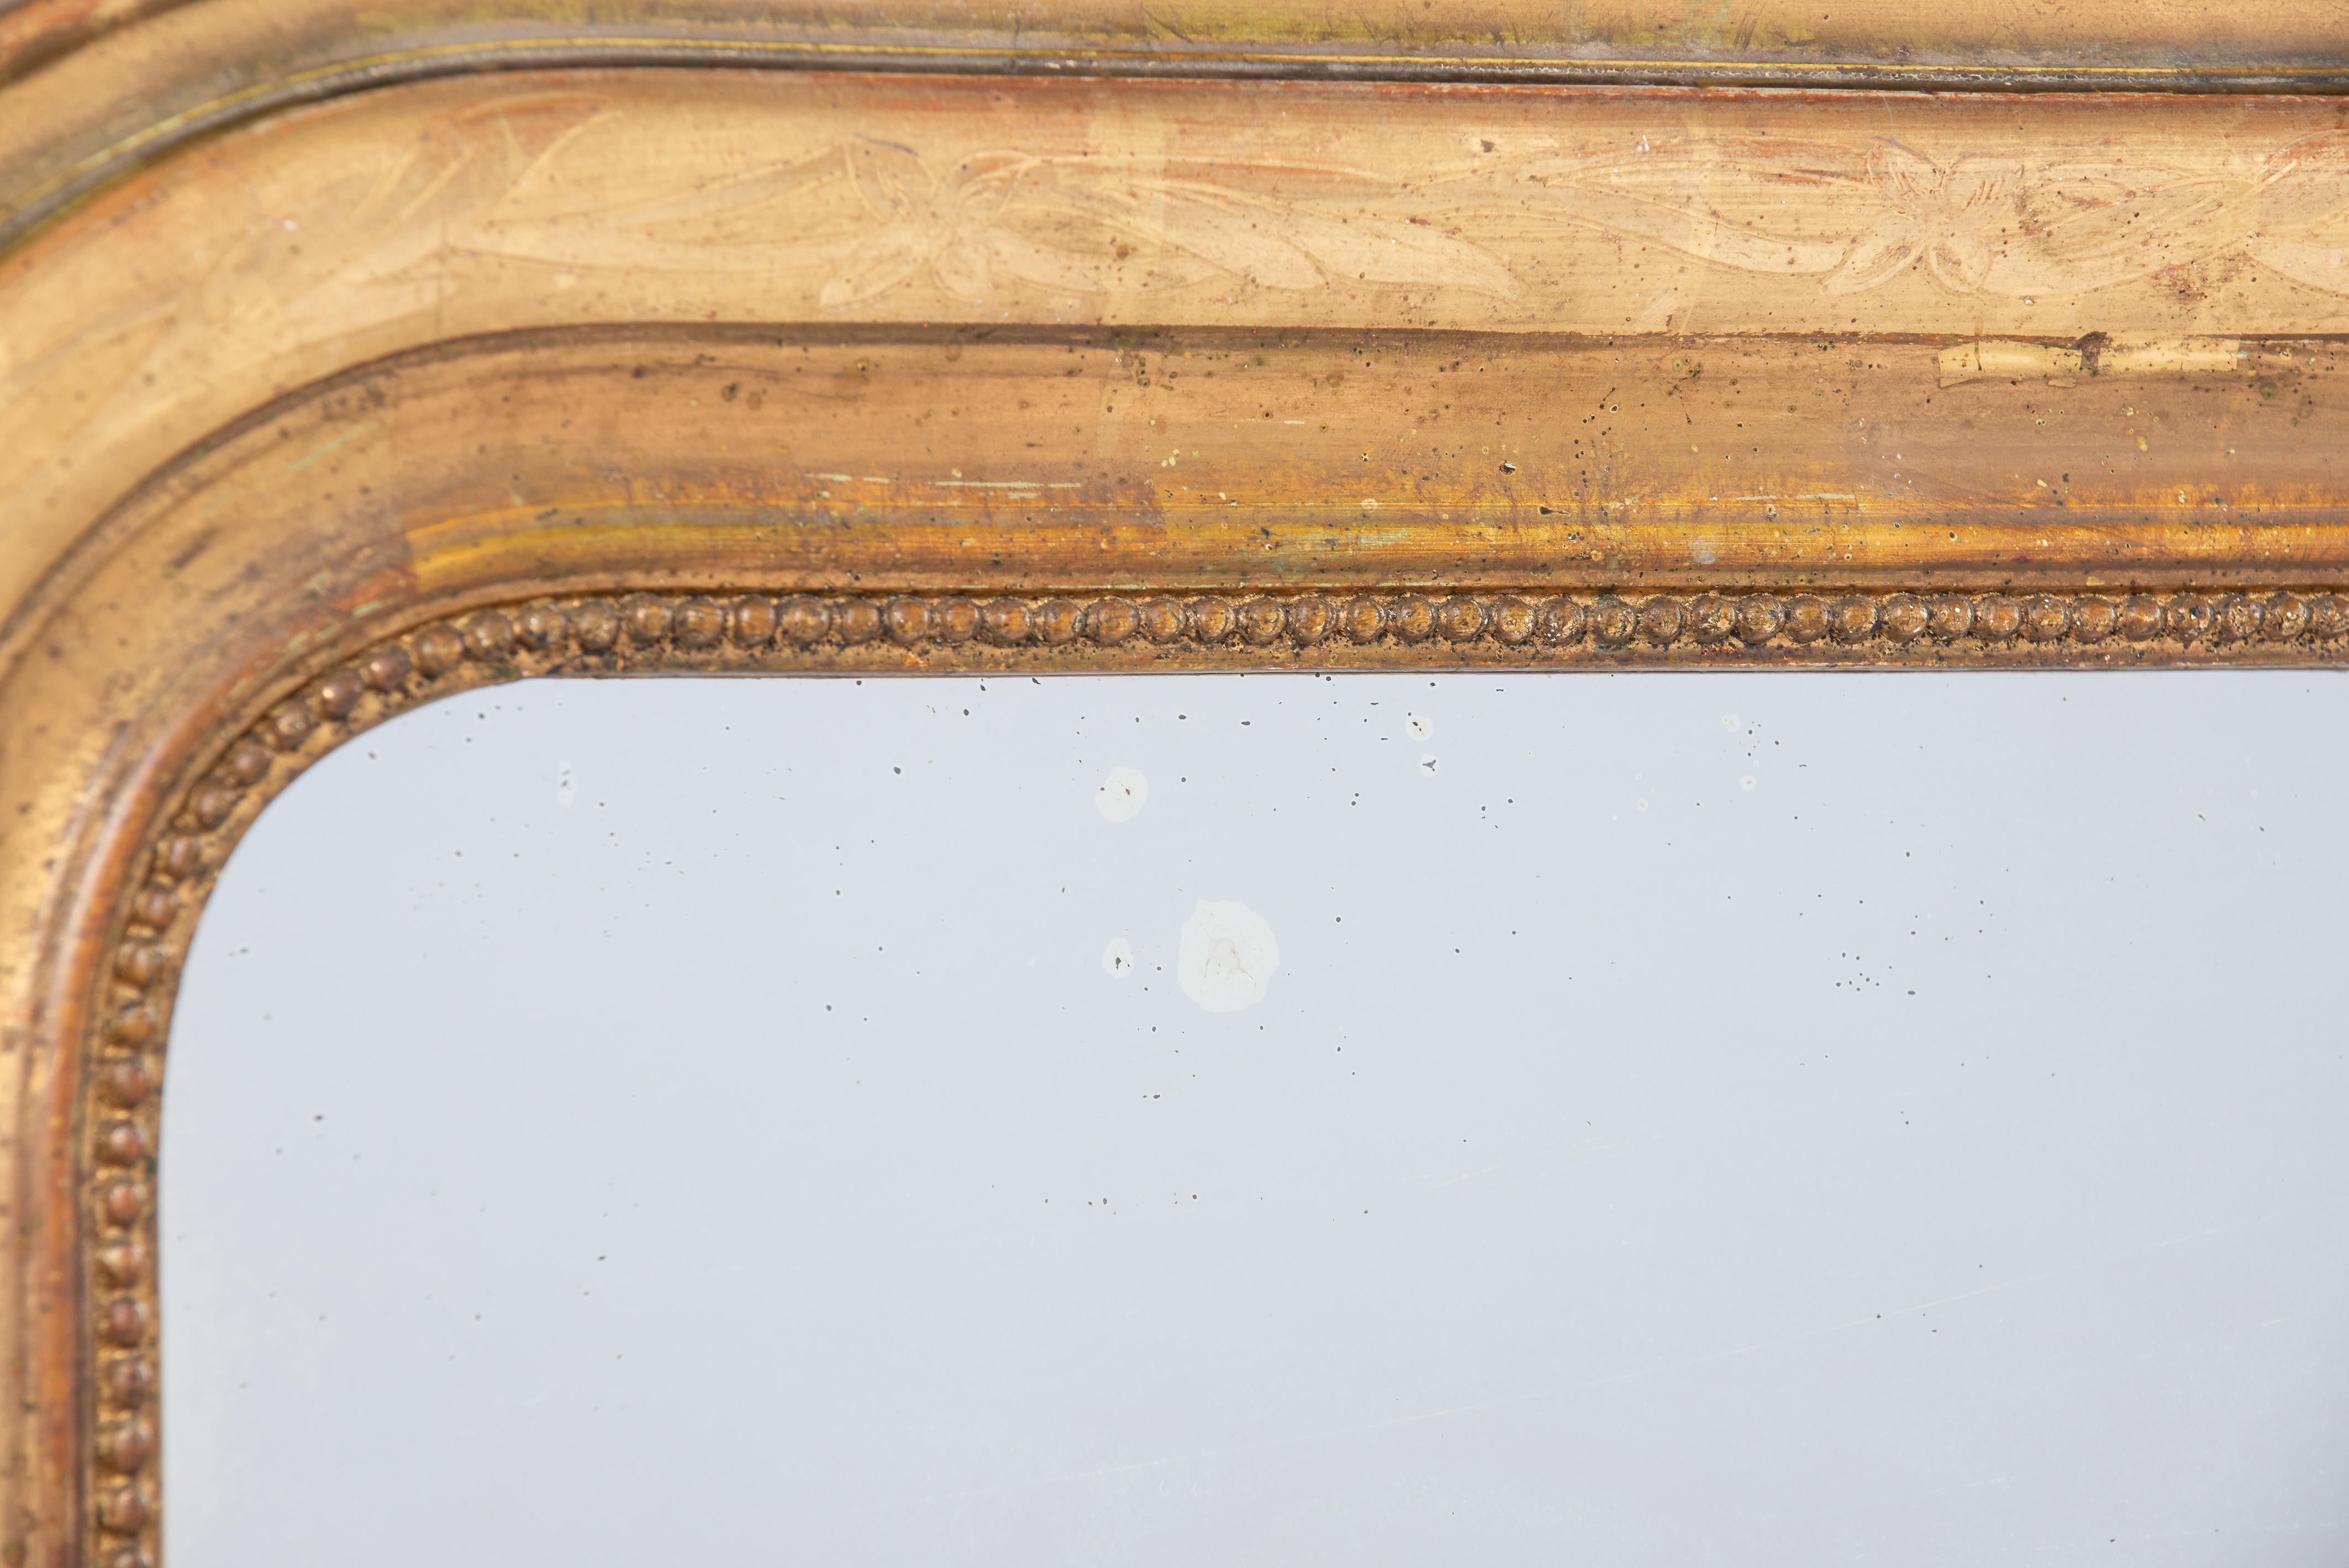 Il s'agit d'un élégant miroir ancien qui a été fabriqué au milieu de la France à la fin du 19e siècle, en 1881. Il présente les angles supérieurs arrondis typiques du style Louis Philippe. Le miroir a un cadre en pin massif qui a été lissé avec du